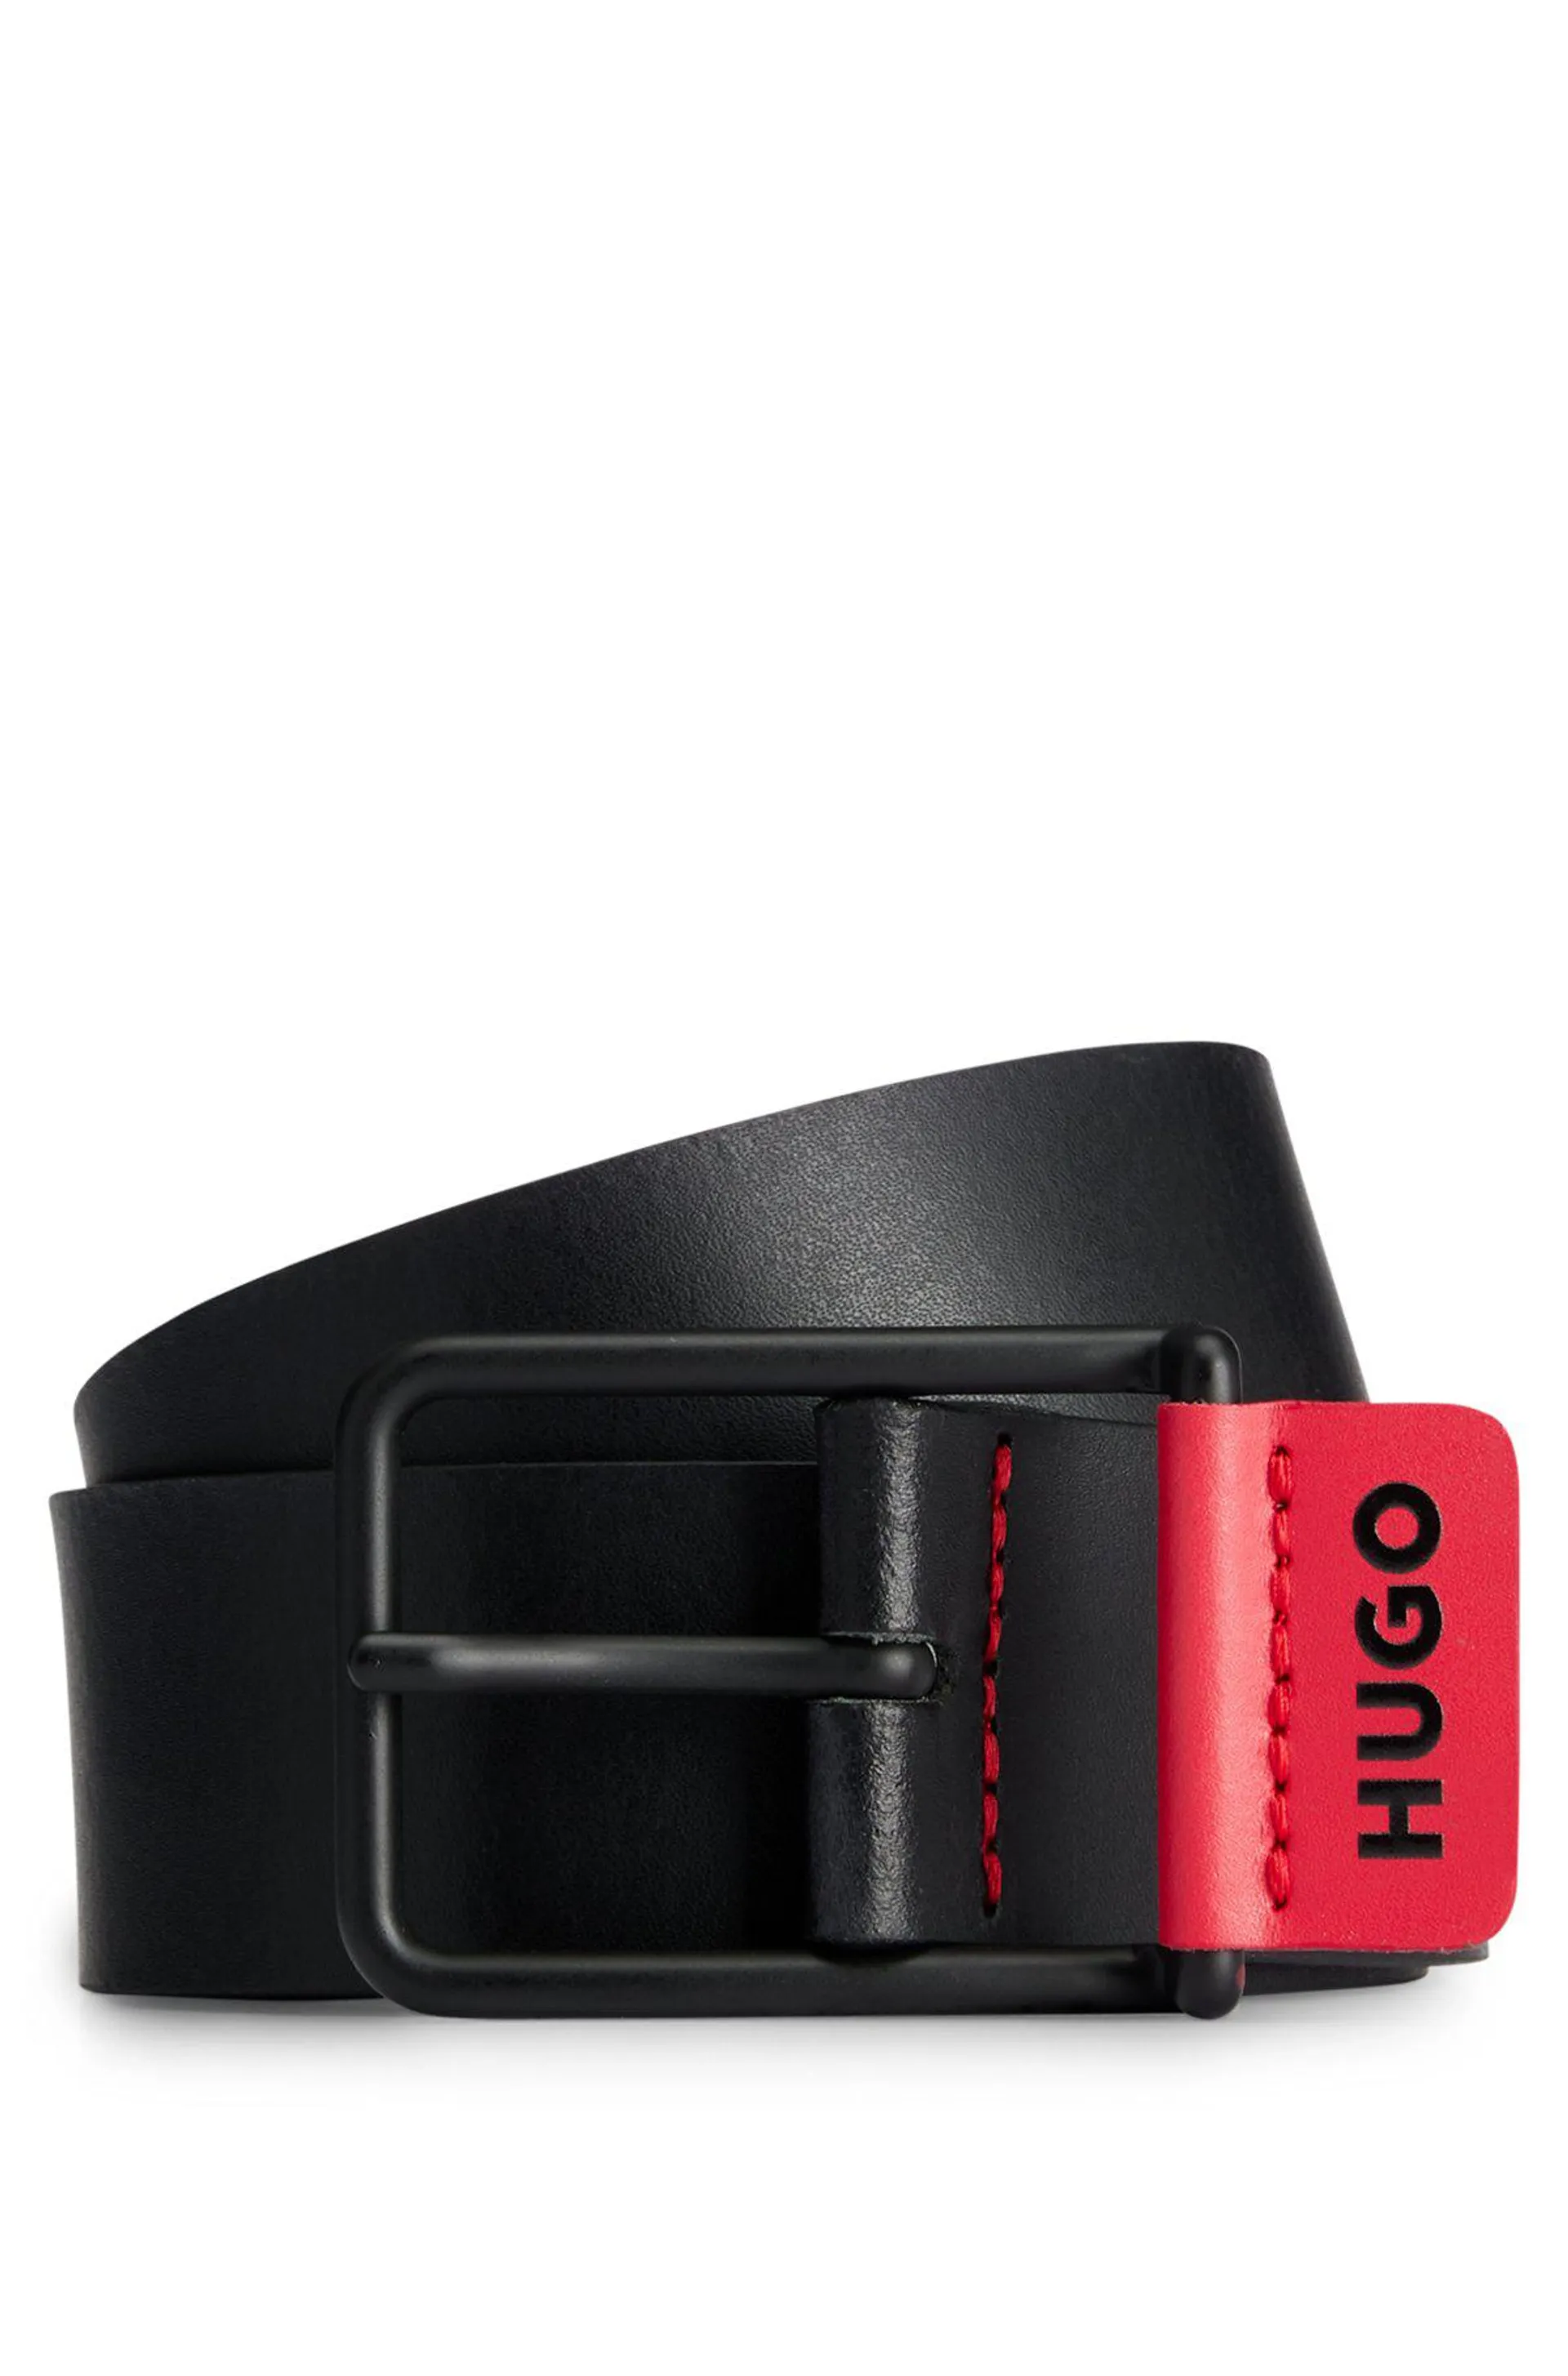 Cinturón de piel con ribete de logo en el rojo de la marca